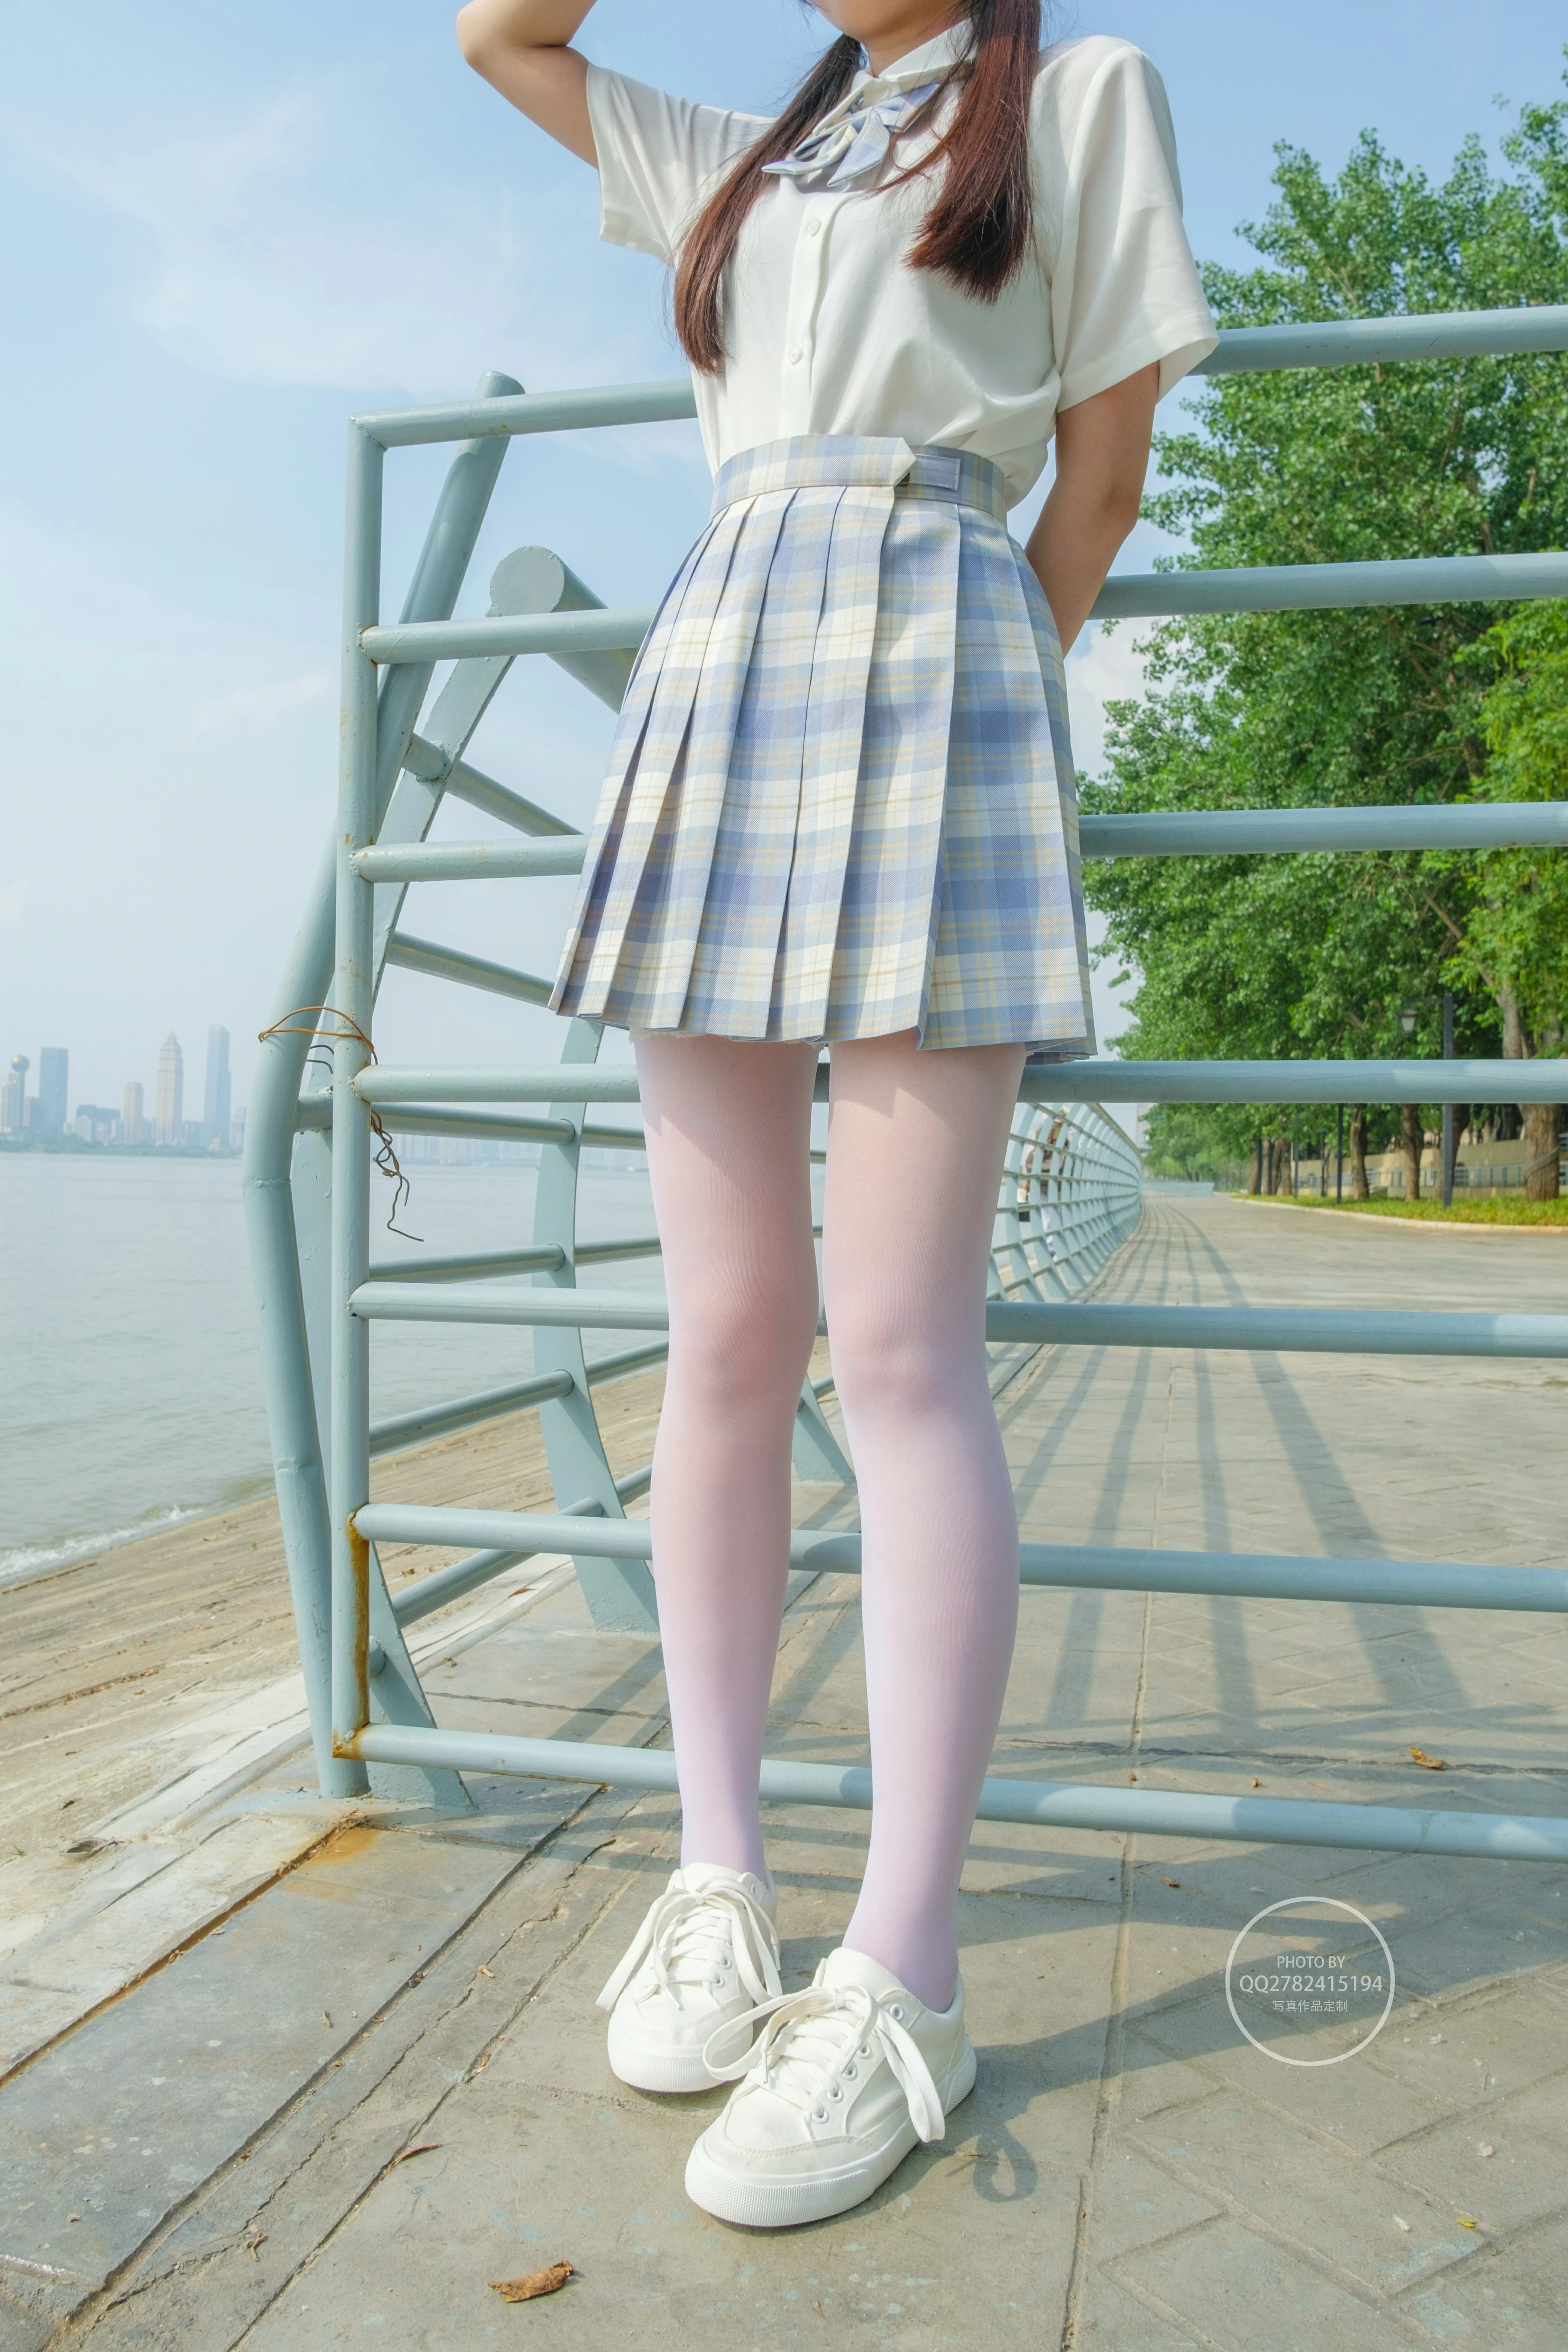 [森萝财团]有料NO.046 清纯圆润小萝莉 白色JK制服与蓝色短裙加白色丝袜美腿操场写真,